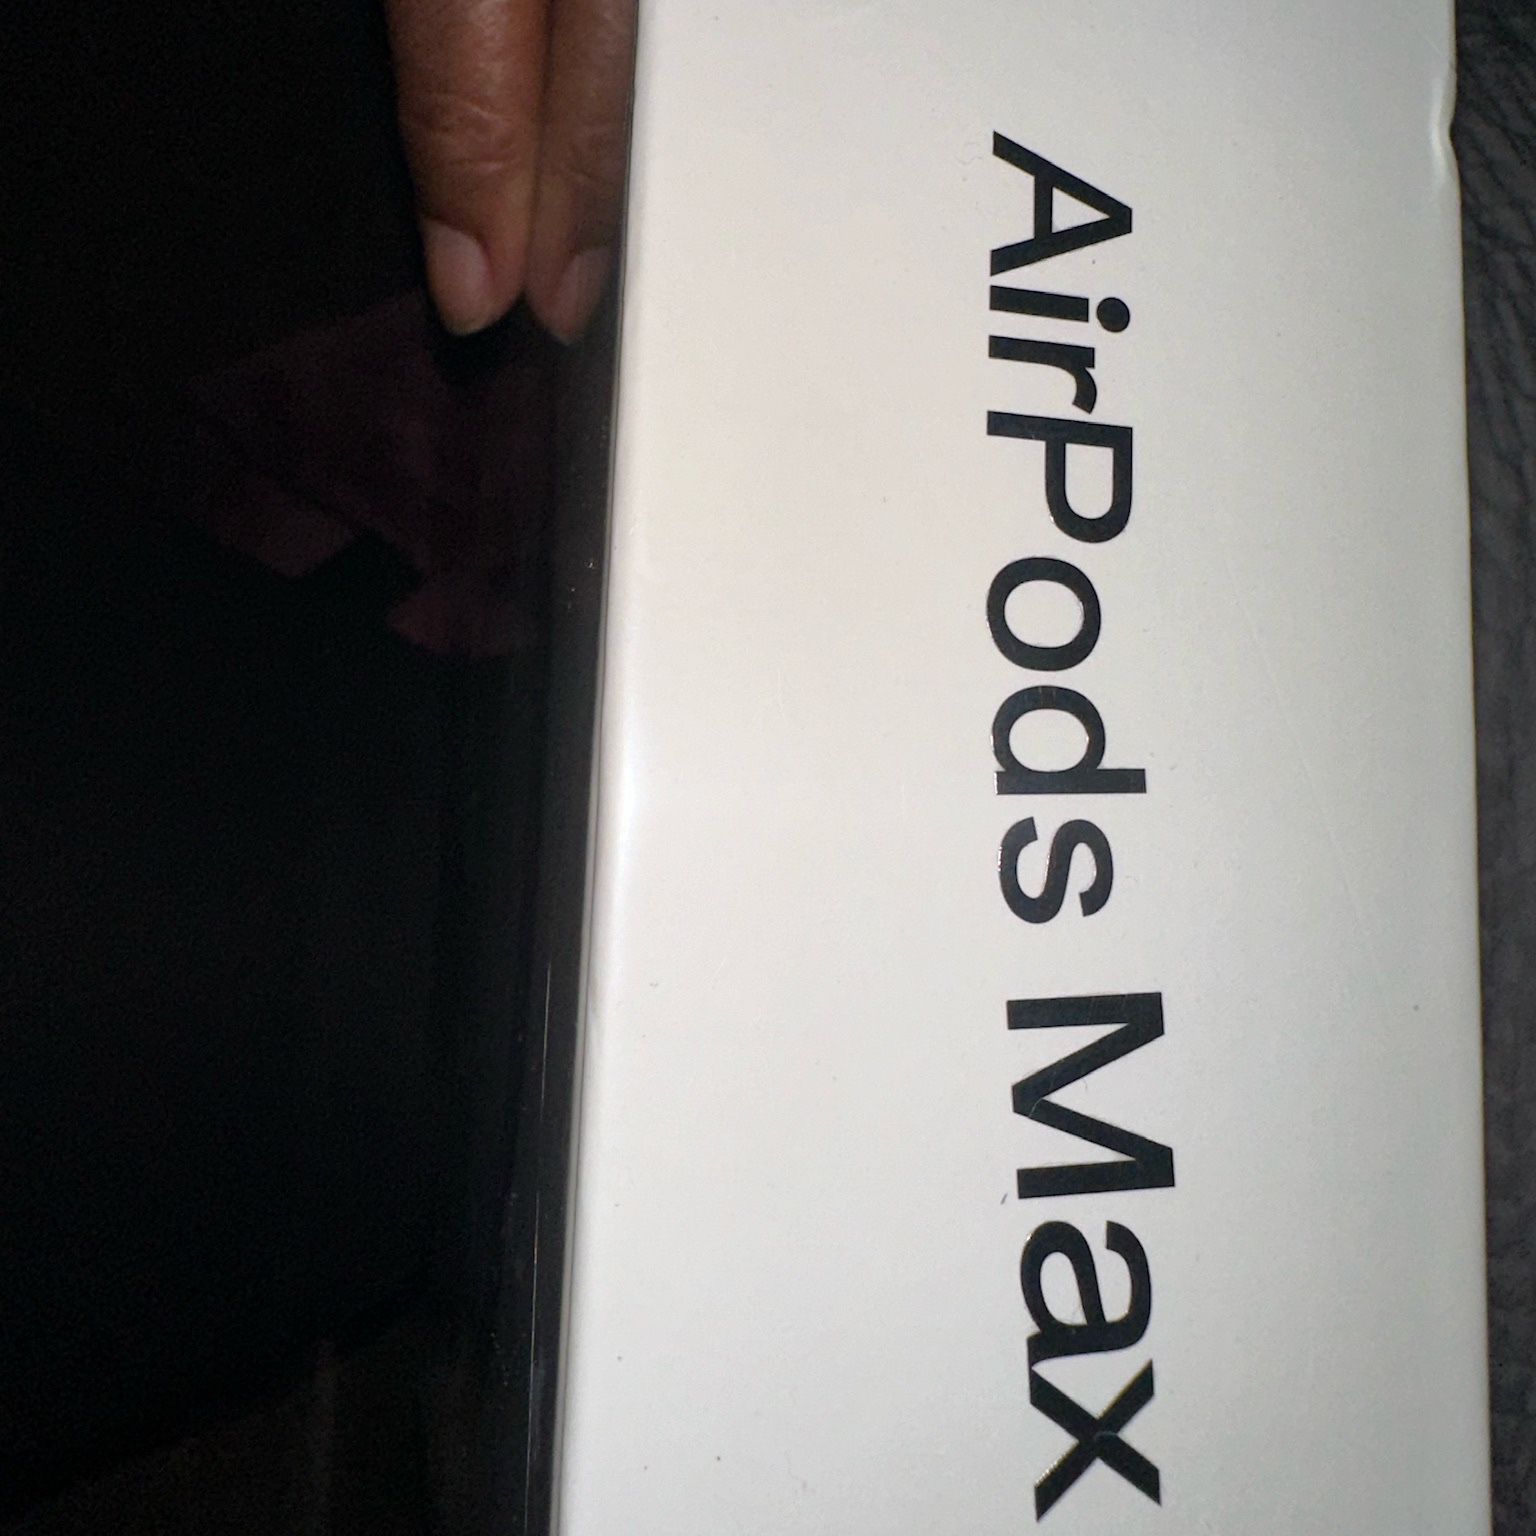 AirPod Maxs